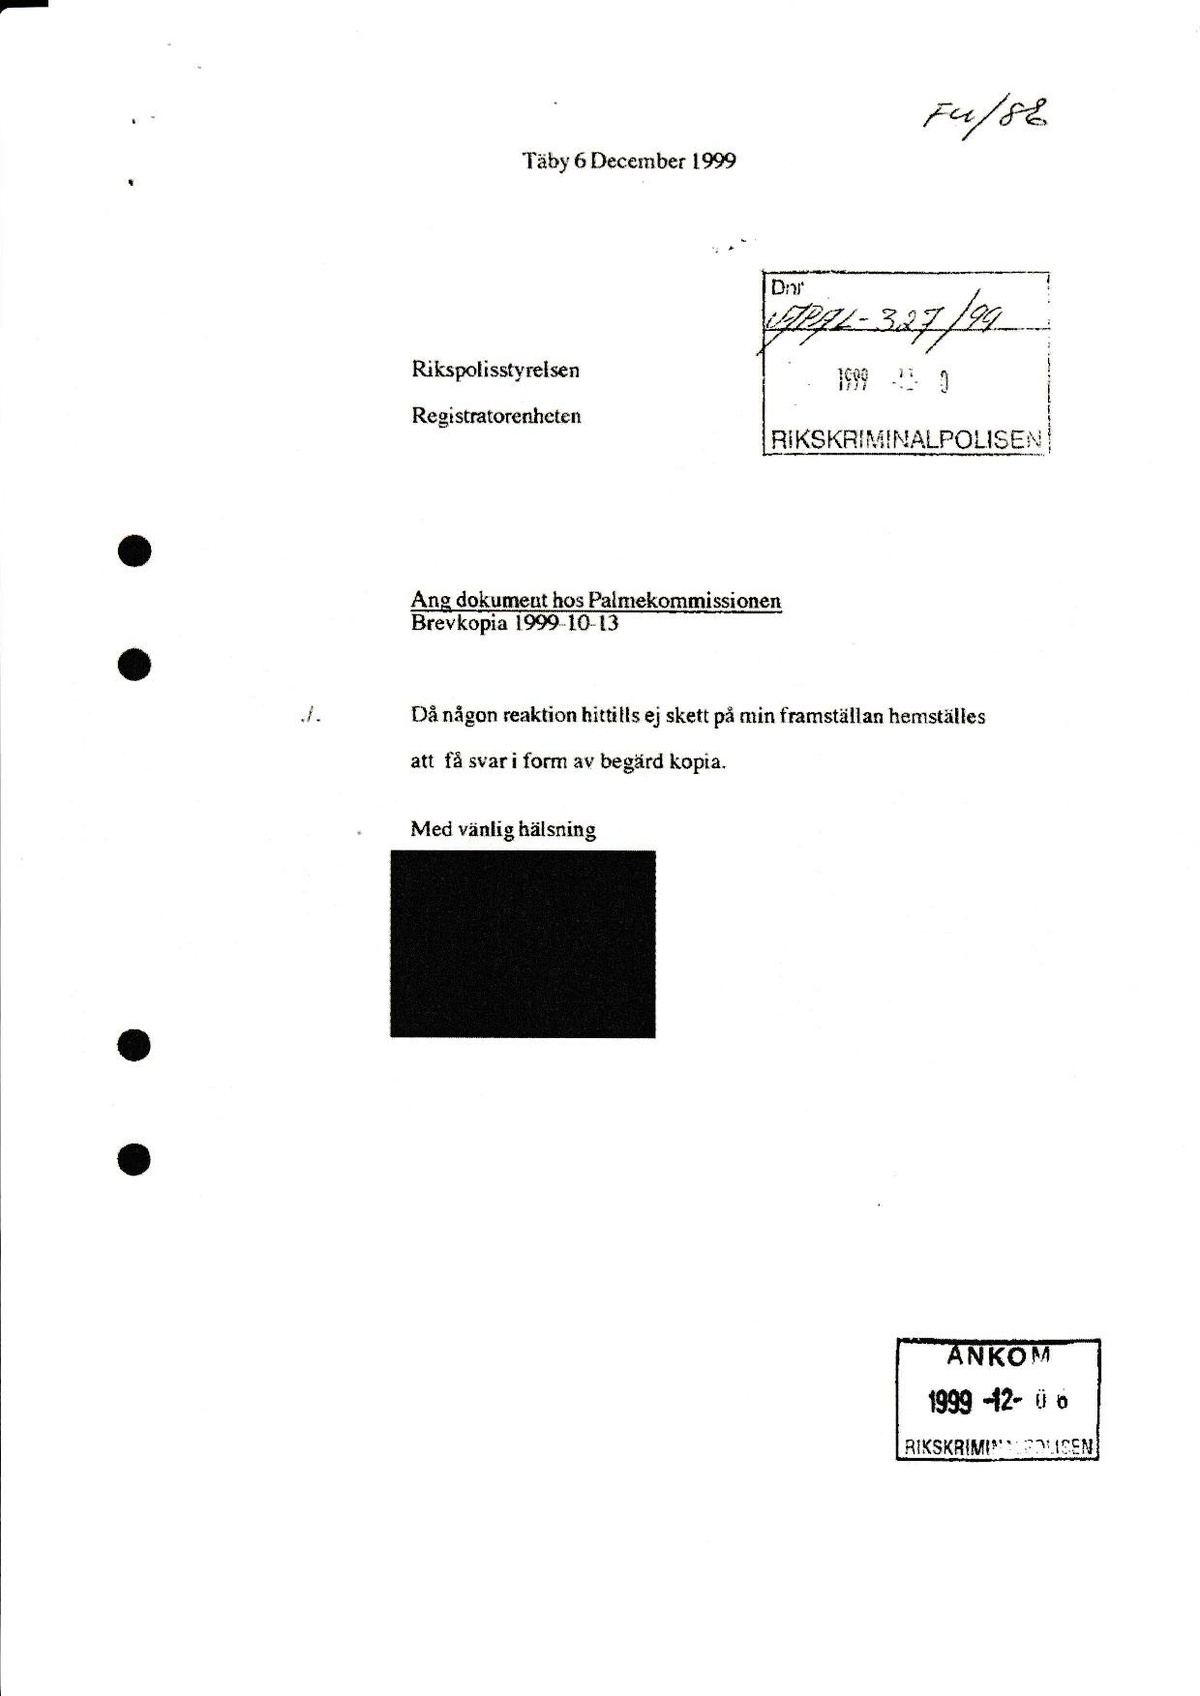 Pol-1999-10-13 E63-04 Ang-dokument-sänt-till-Palmekommissionen.pdf